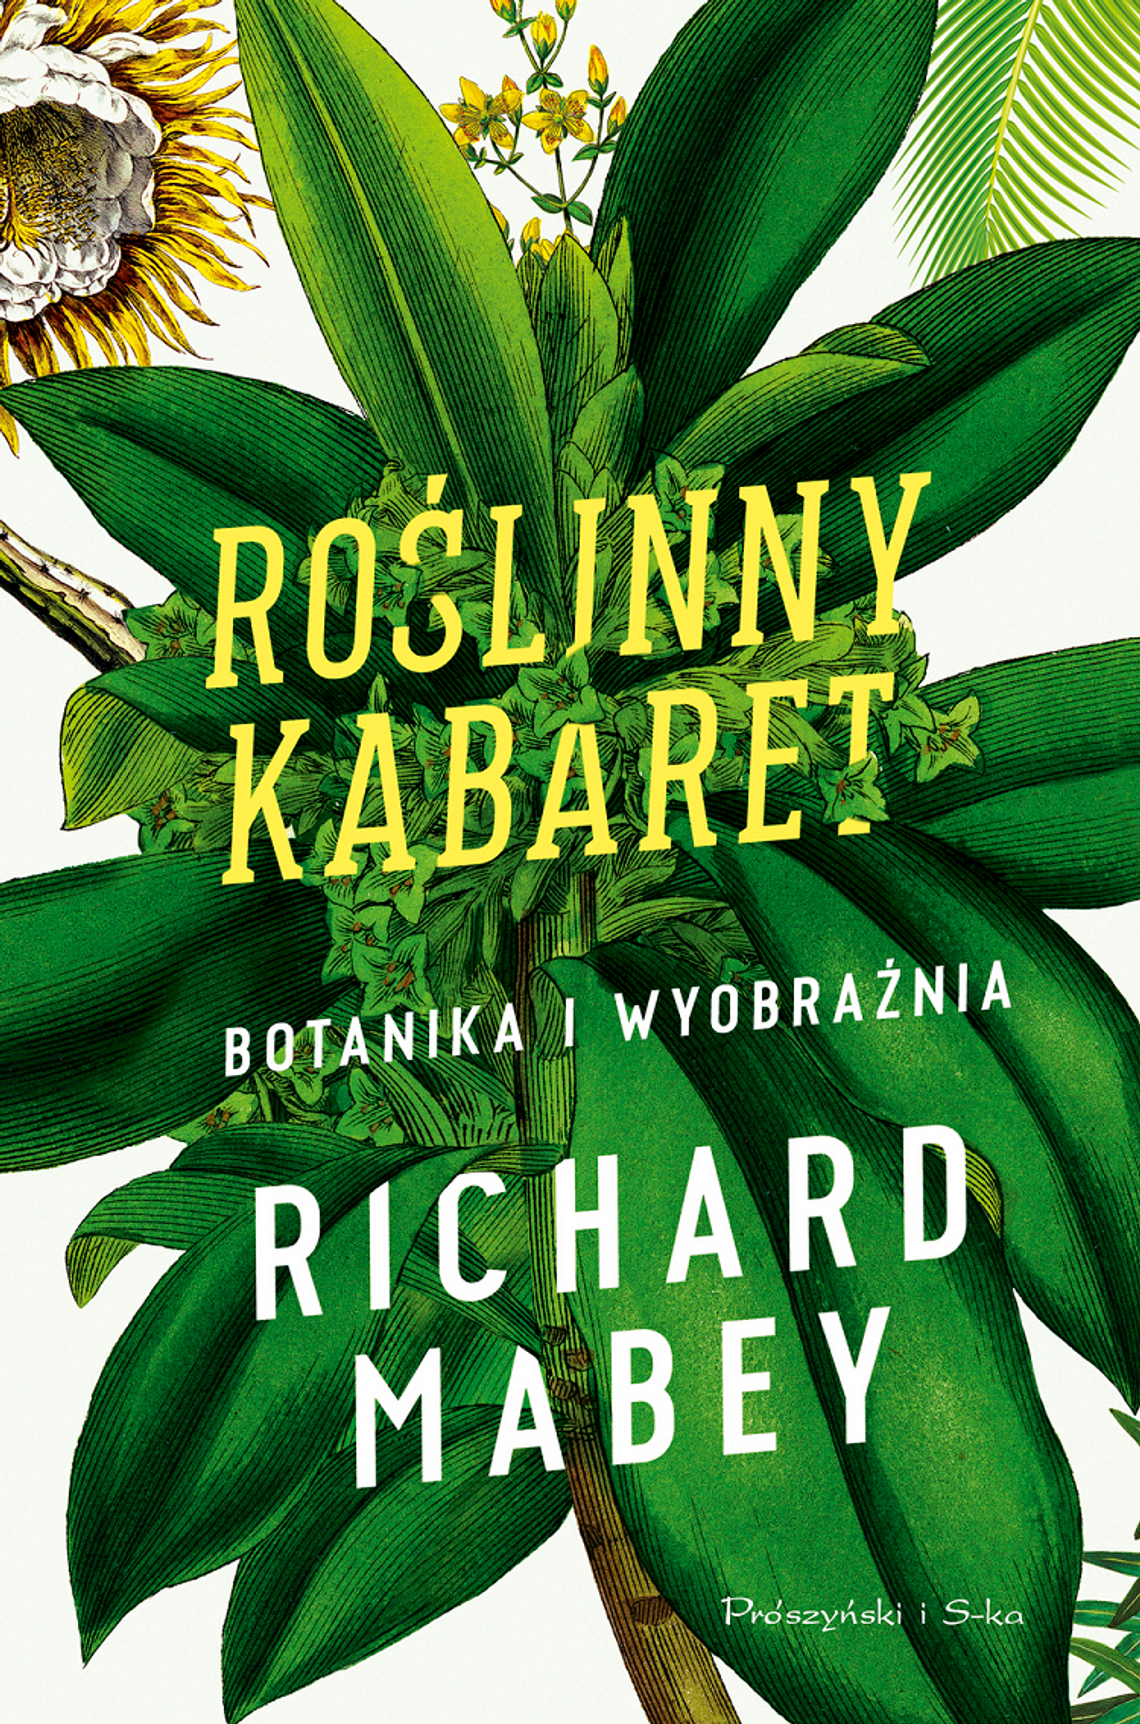 Richard Mabey "Roślinny kabaret. Botanika i wyobraźnia"; wyd. Prószyński i S-ka